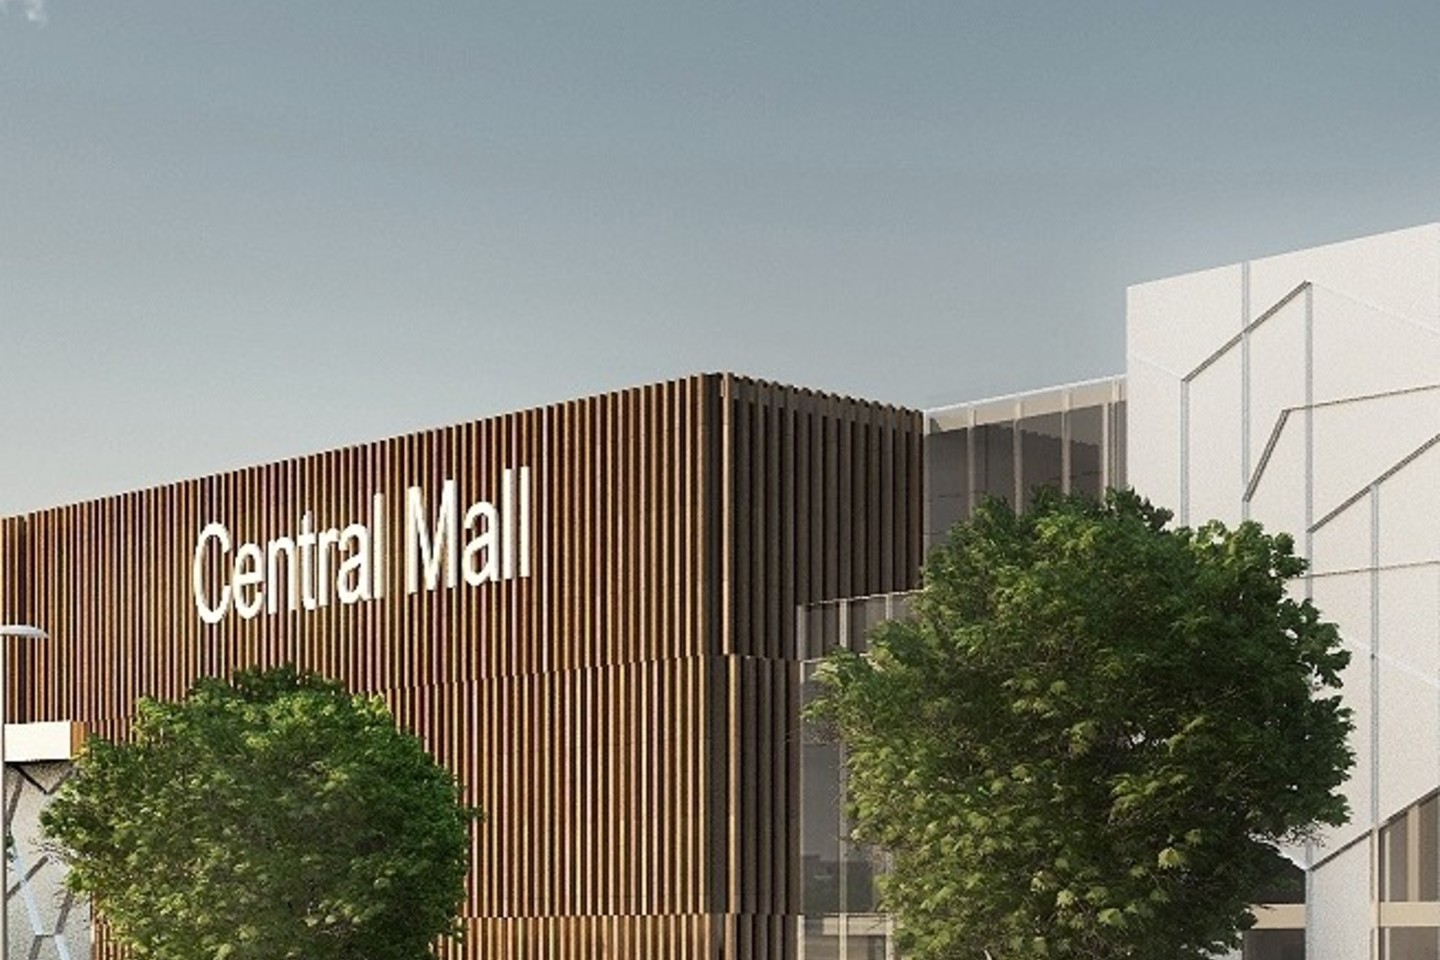 Darbinis prekybos ir pramogų centro pavadinimas – „Central Mall“<br>Vizualizacija